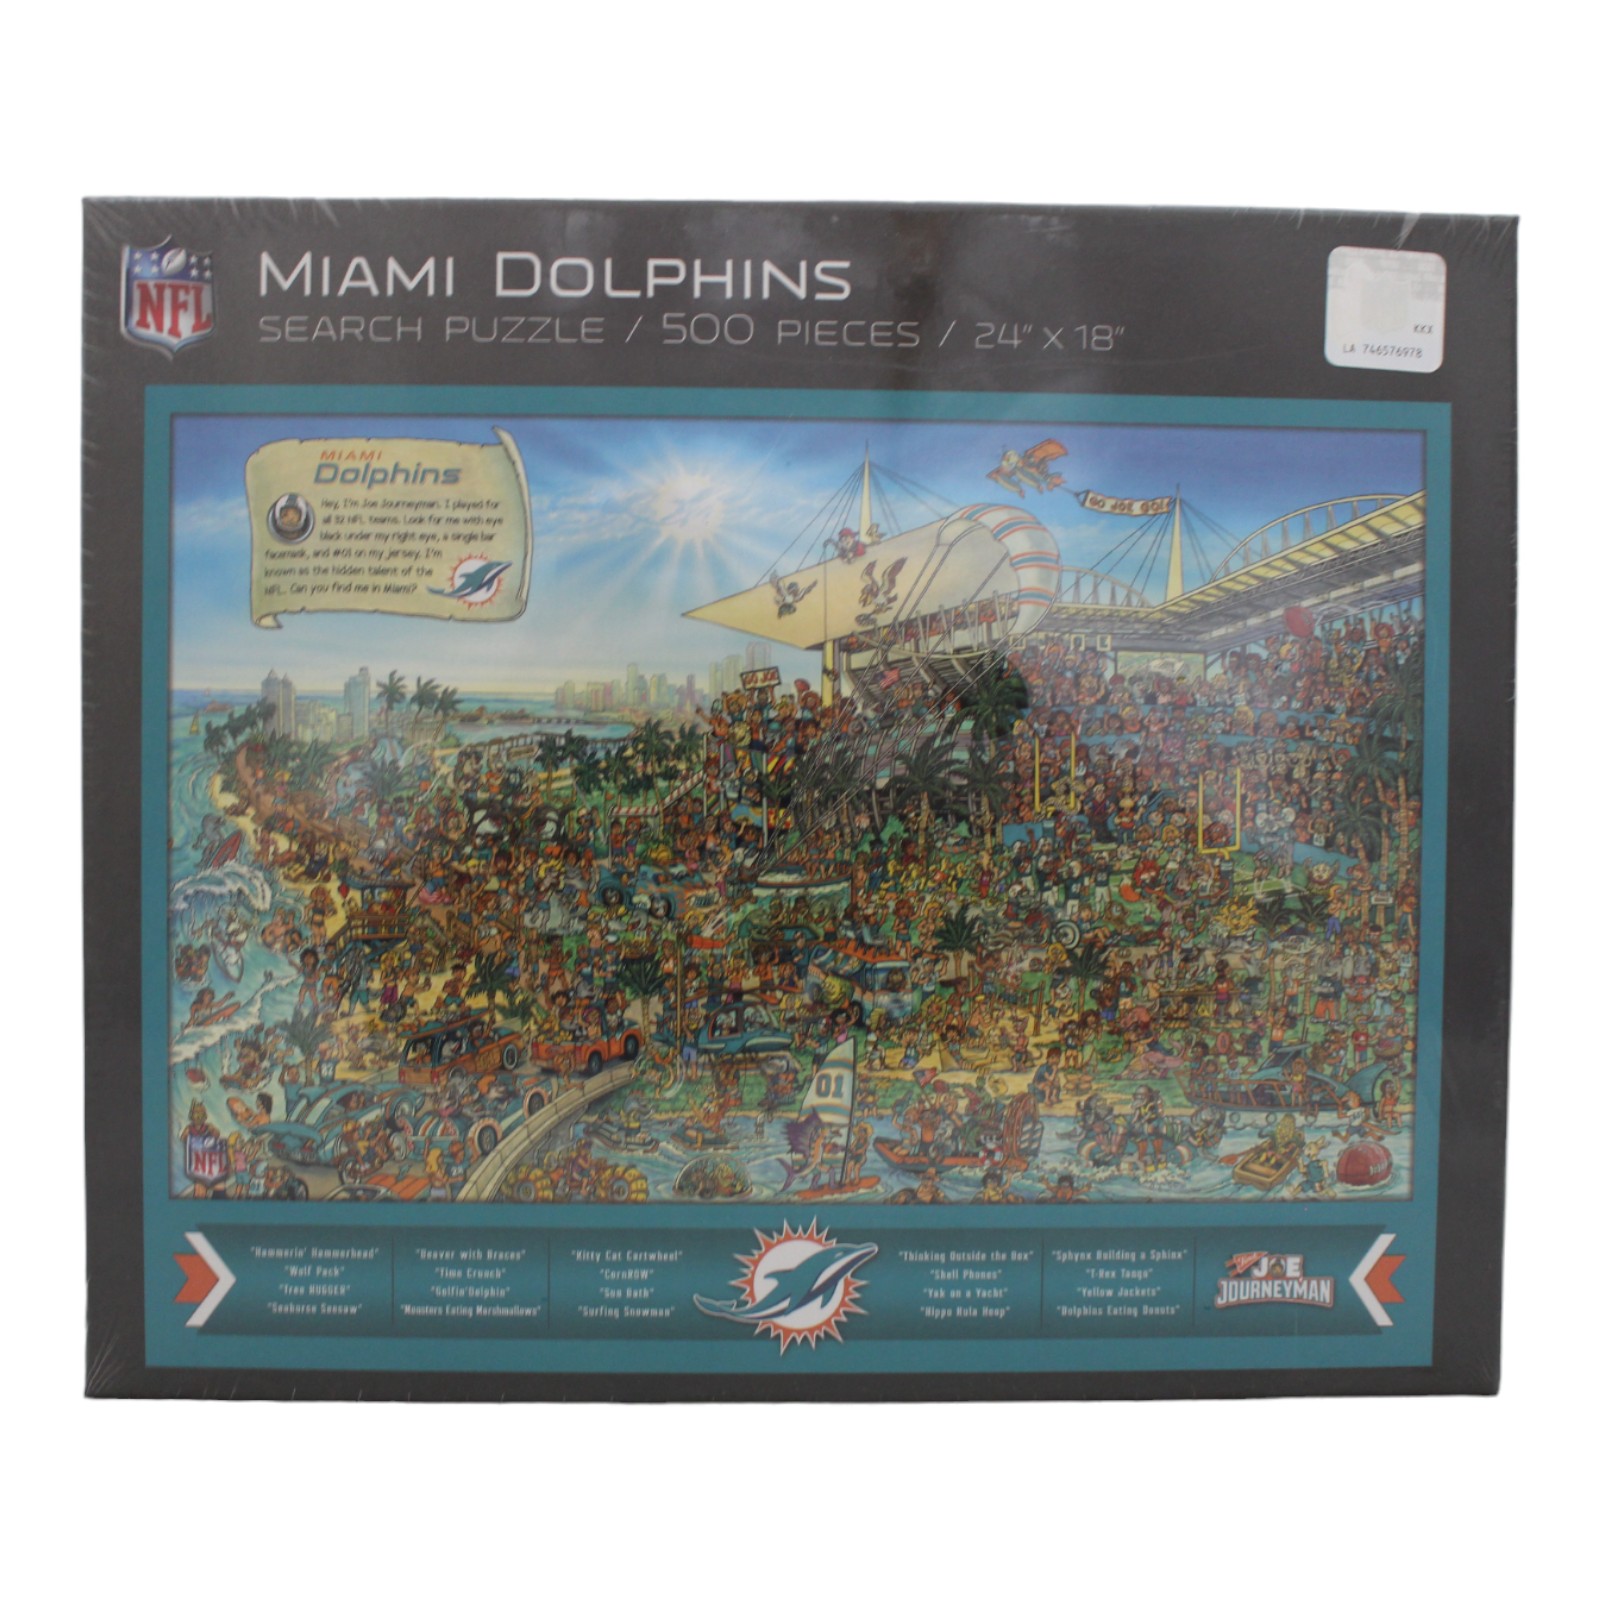 Miami Dolphins 18"x24" YouTheFan 500 Piece Joe Journeyman Puzzle